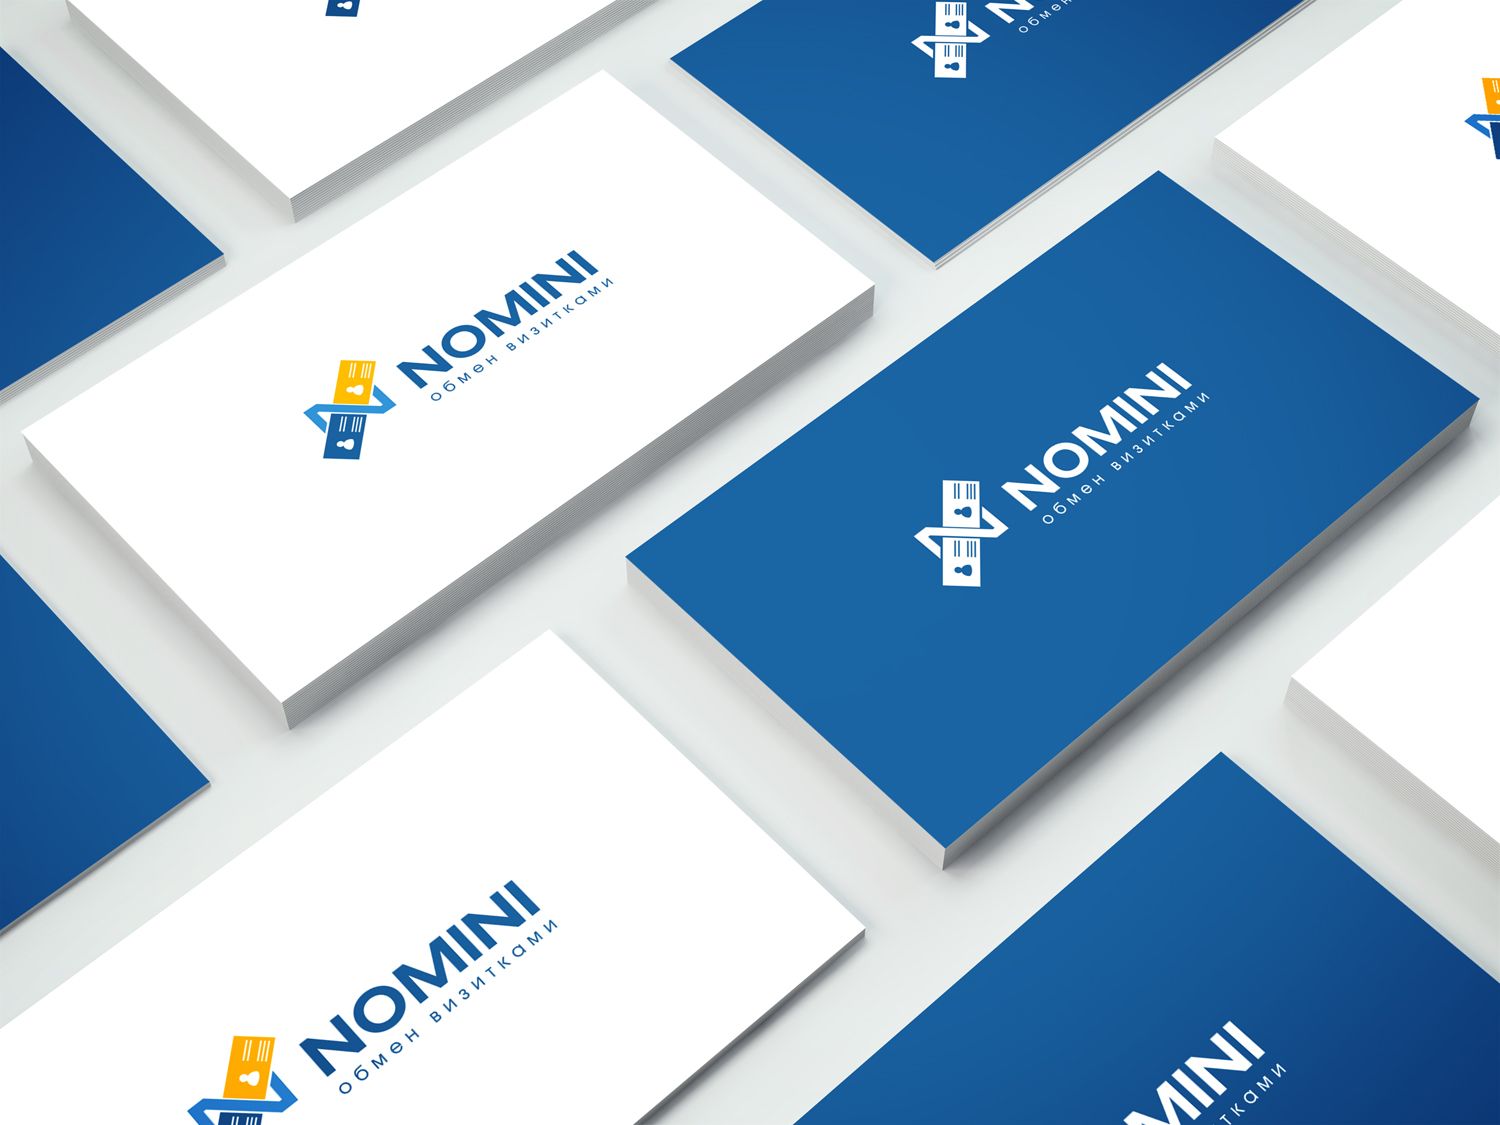 Логотип и иконка для iOS-приложения Nomini - дизайнер mz777